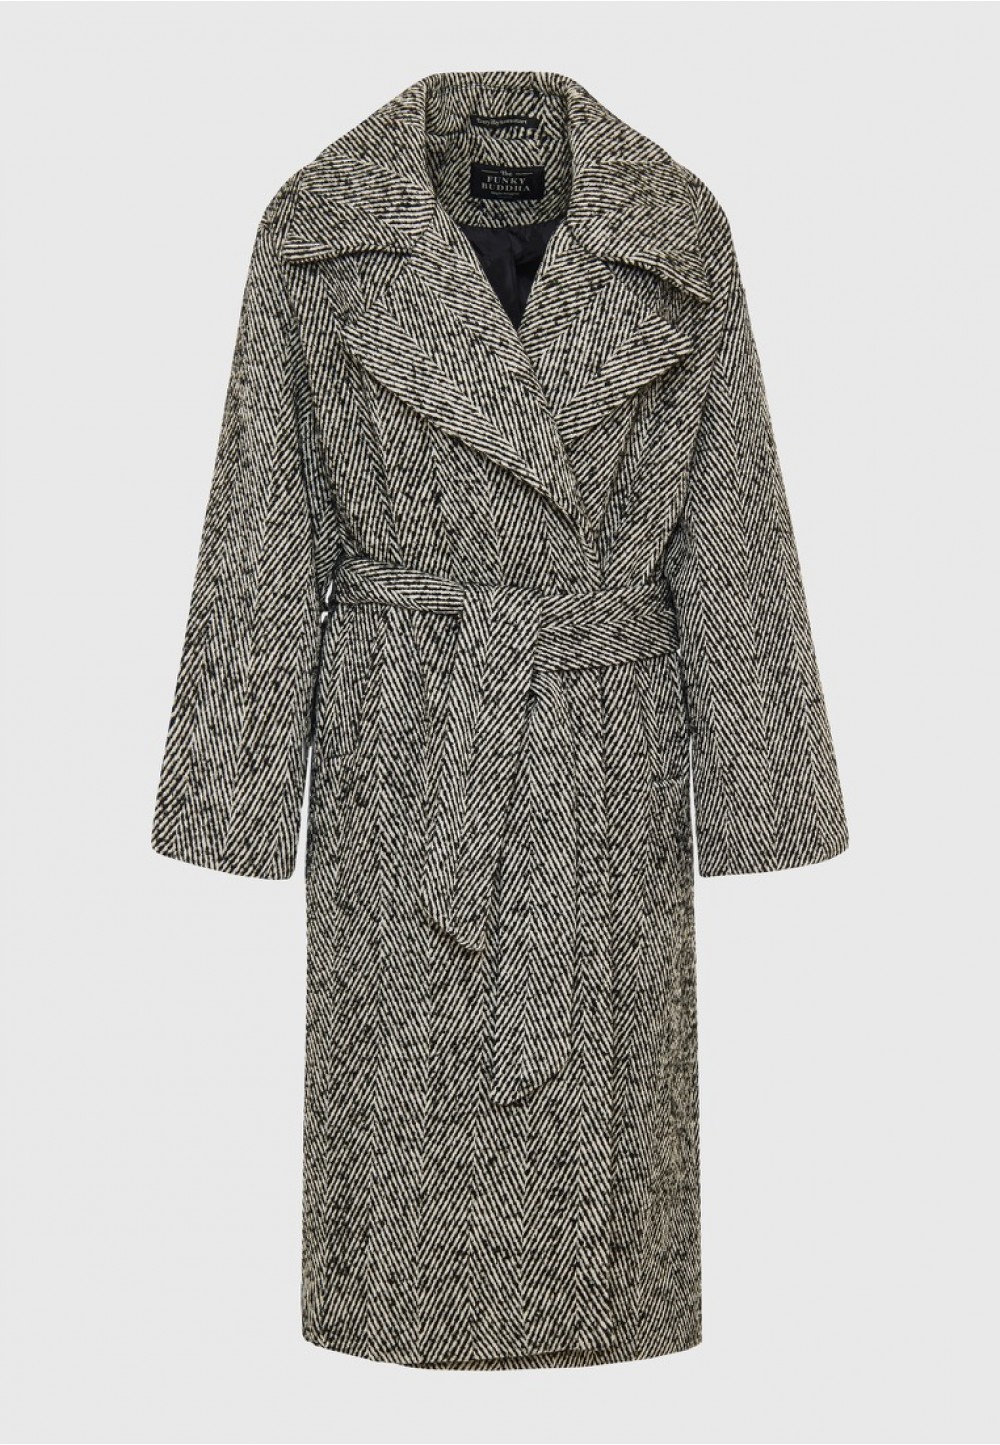 Женское стеганое пальто оверсайз с рисунком «елочка»